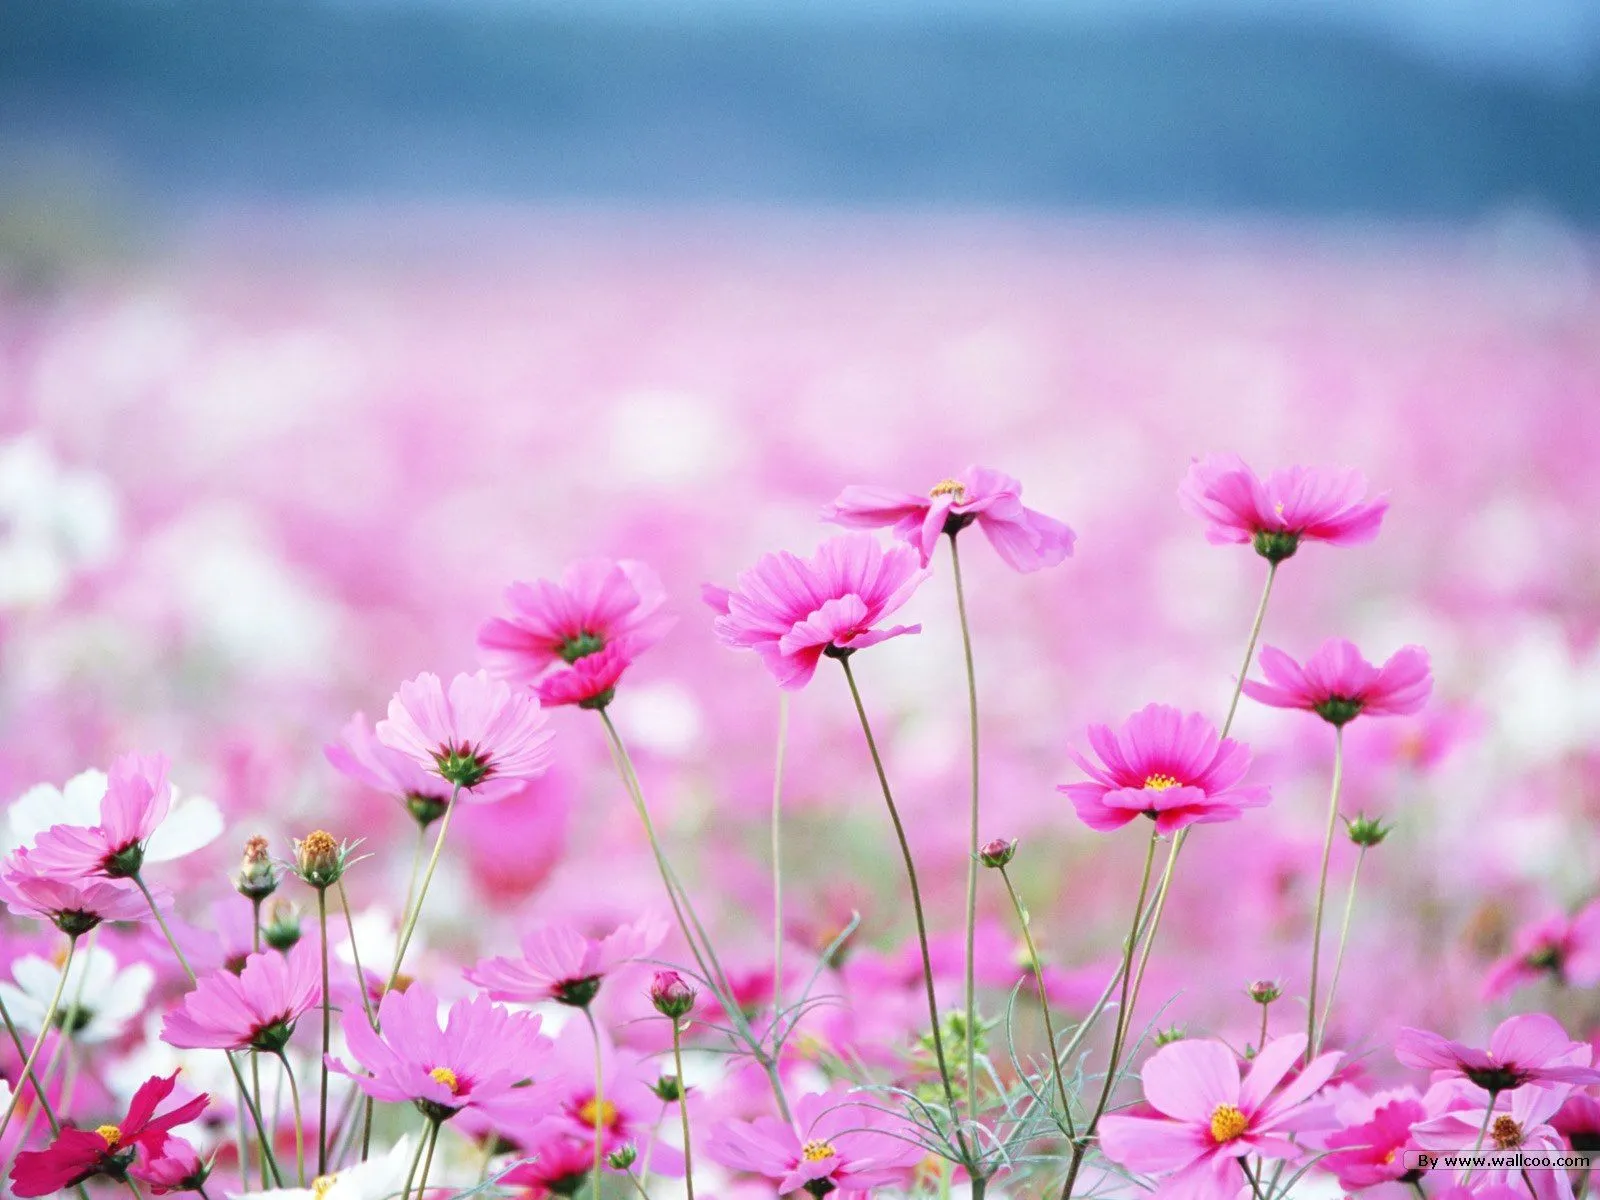 wallpapernarium: Campo de flores color rosa y blanco